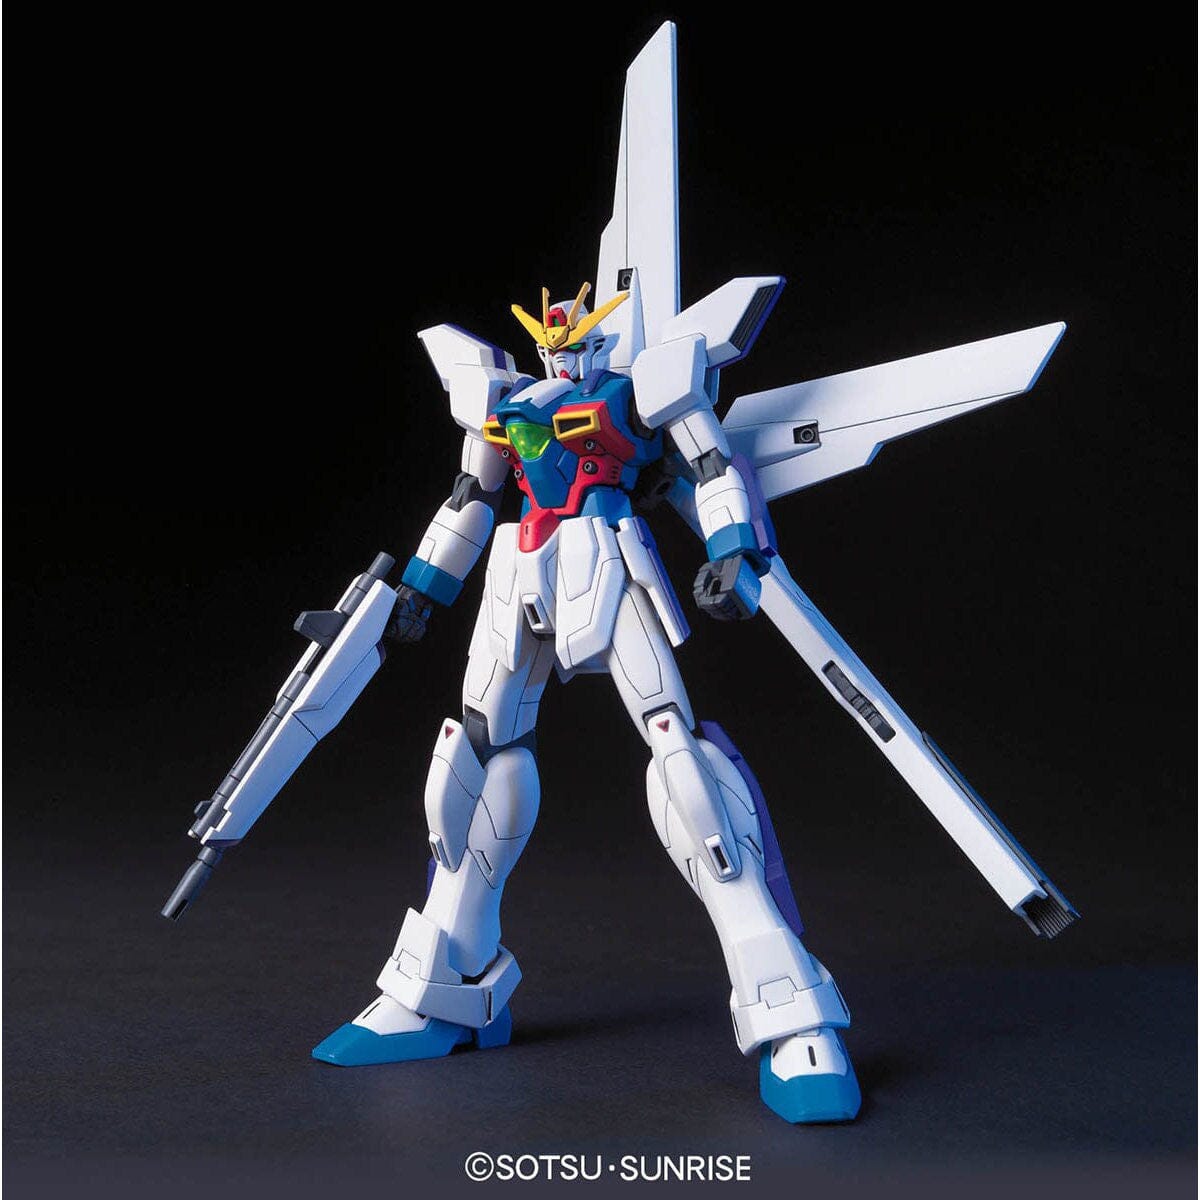 HGAW 1/144 #109 GX-9900 X Gundam